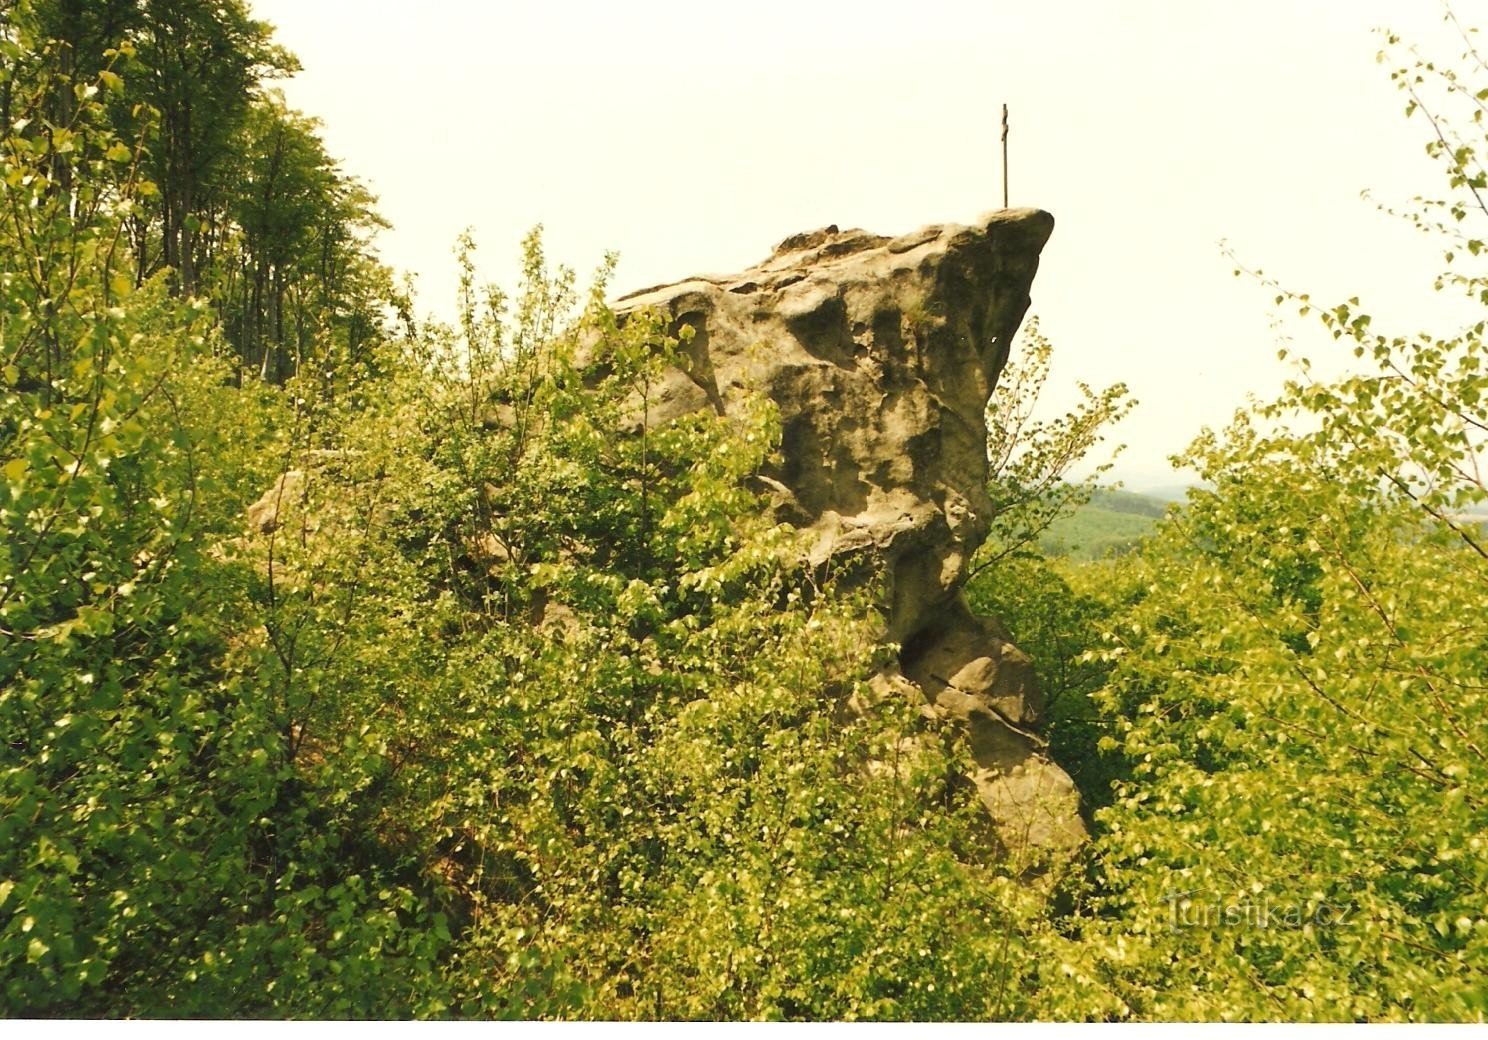 讲坛 - 1998 年带十字架的岩石上部